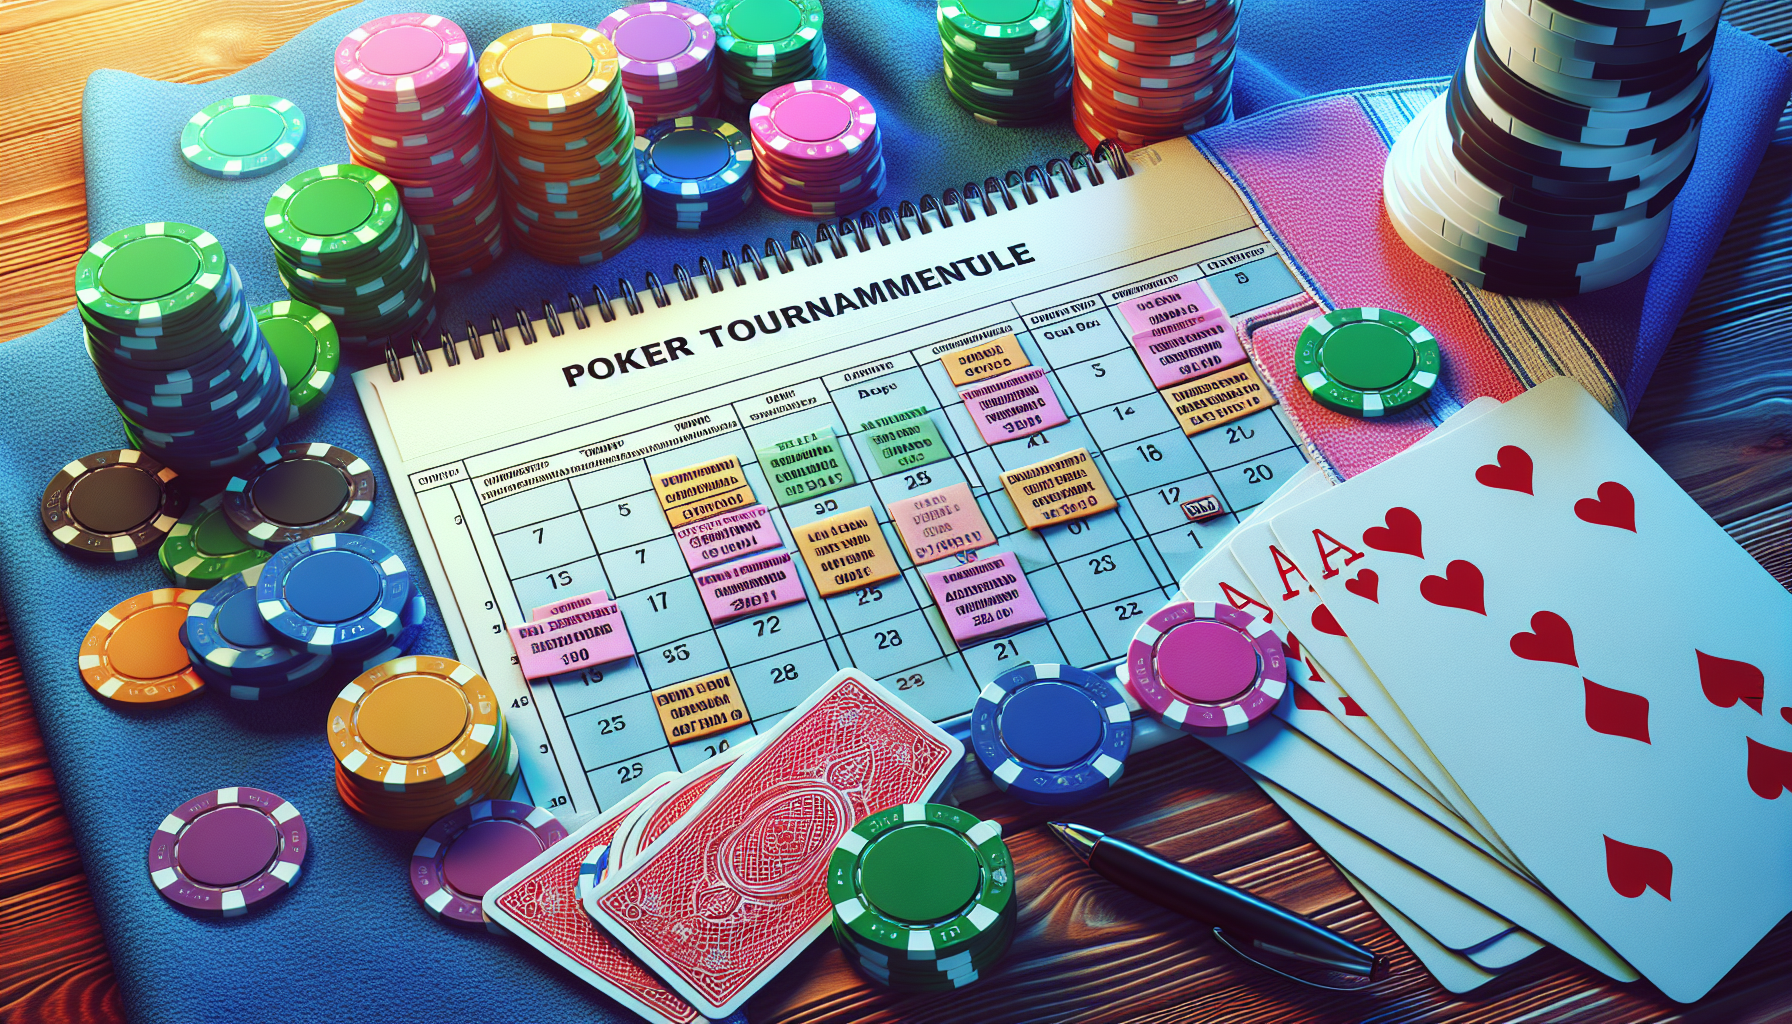 découvrez le calendrier des tournois de poker, ne manquez aucune date grâce à notre planning complet.